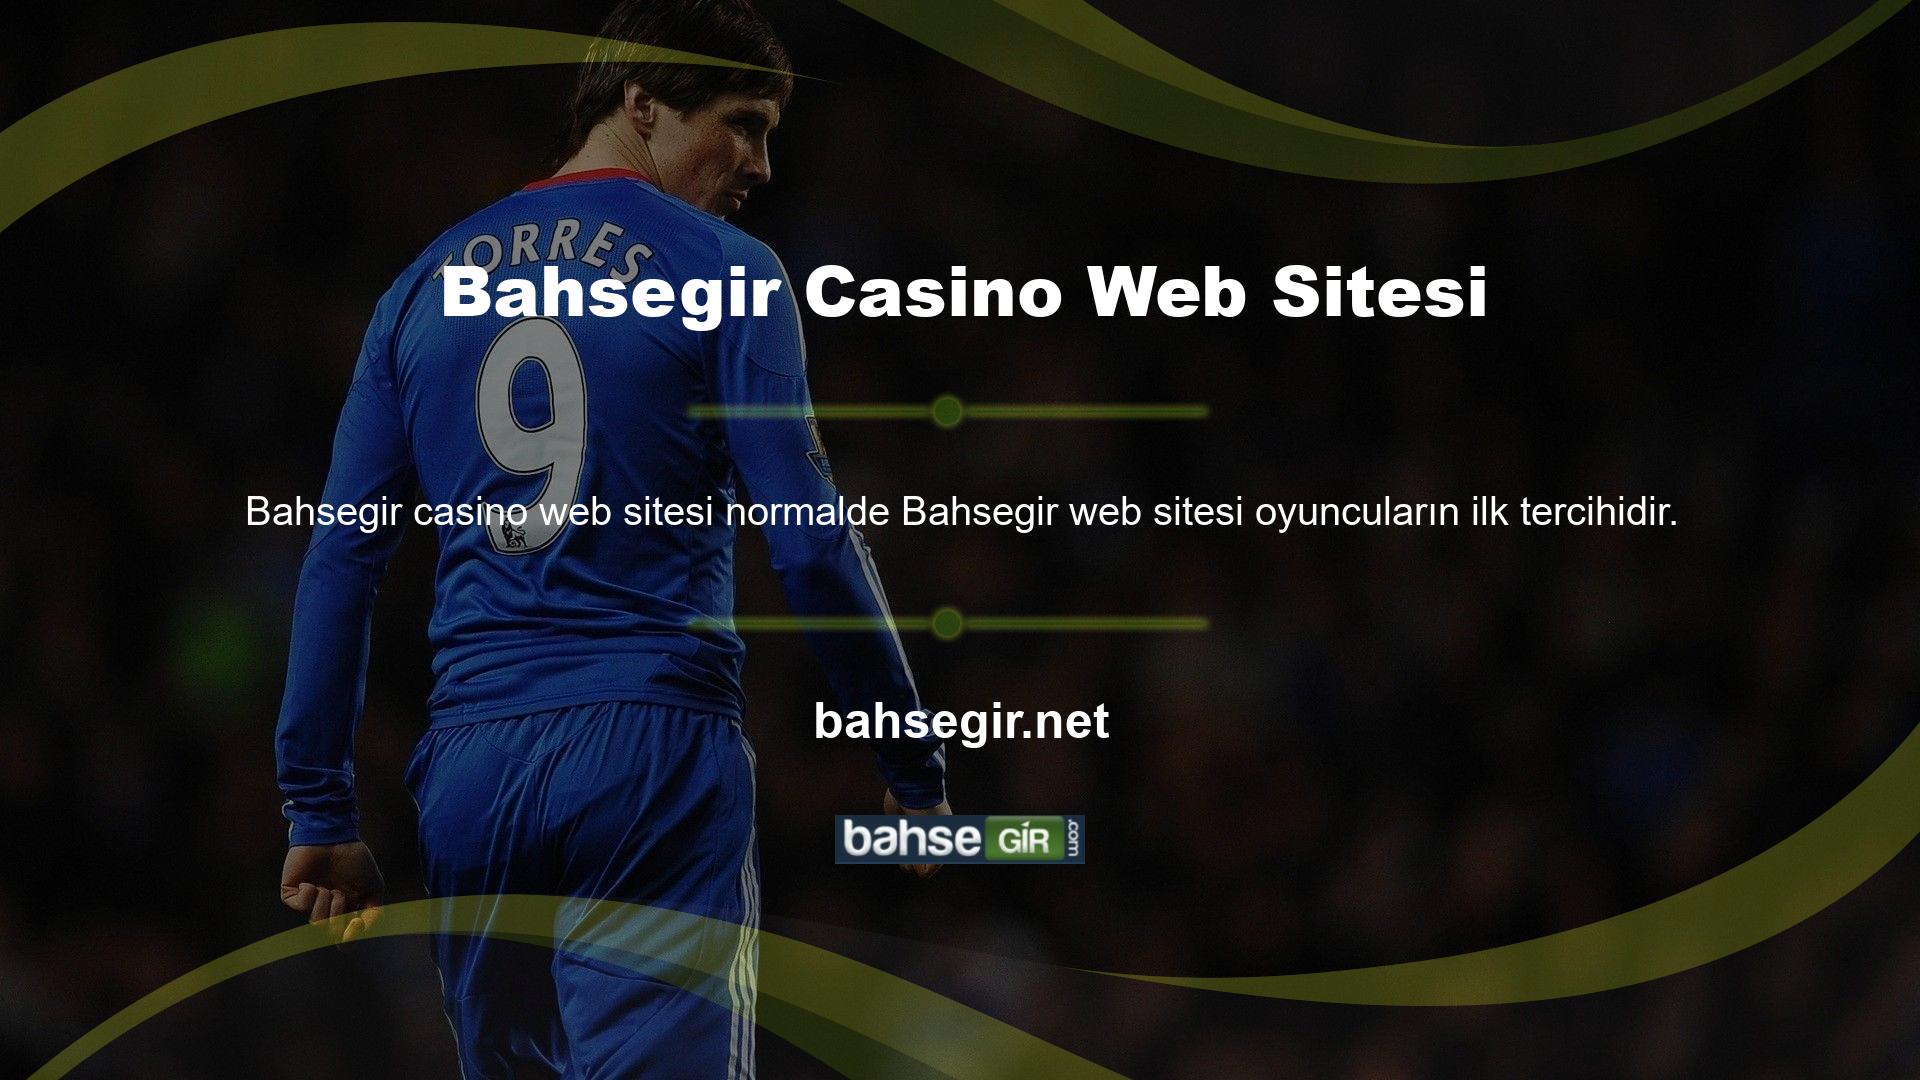 Casino web sitesini kullanabilmek için öncelikle siteye kaydolmanız gerekmektedir